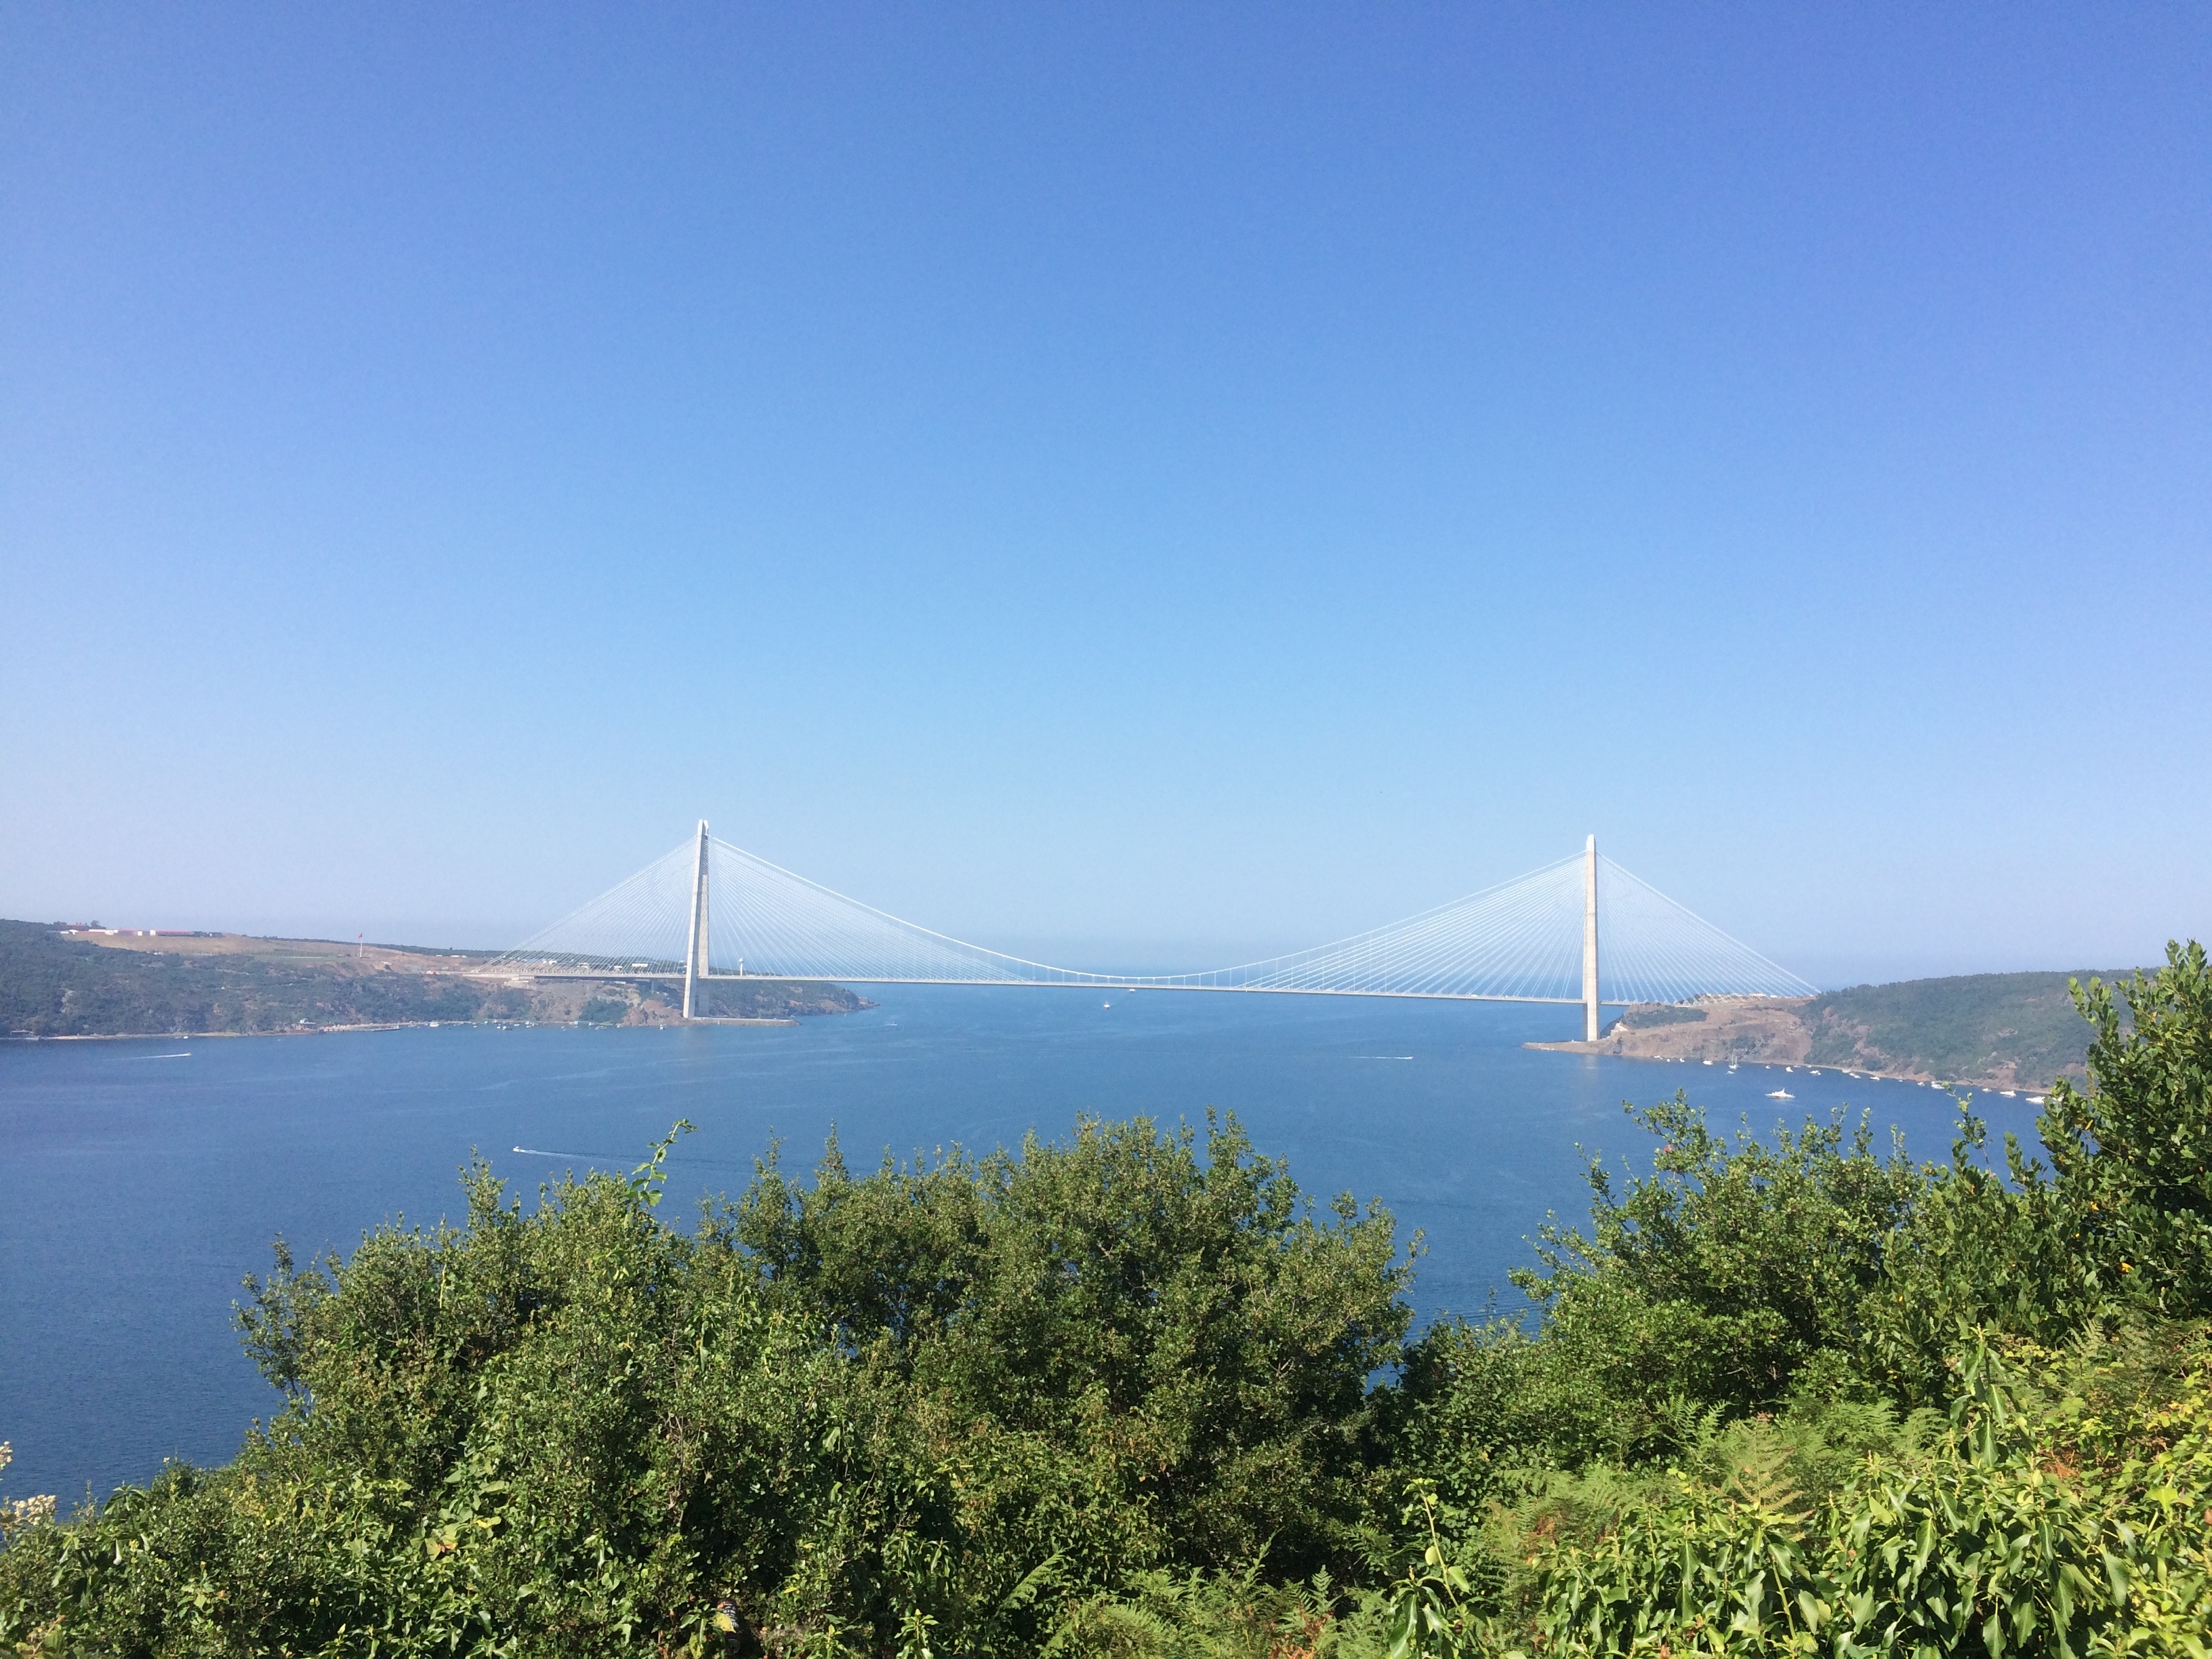 The Yavuz Sultan Selim Bridge over the Bosphorus